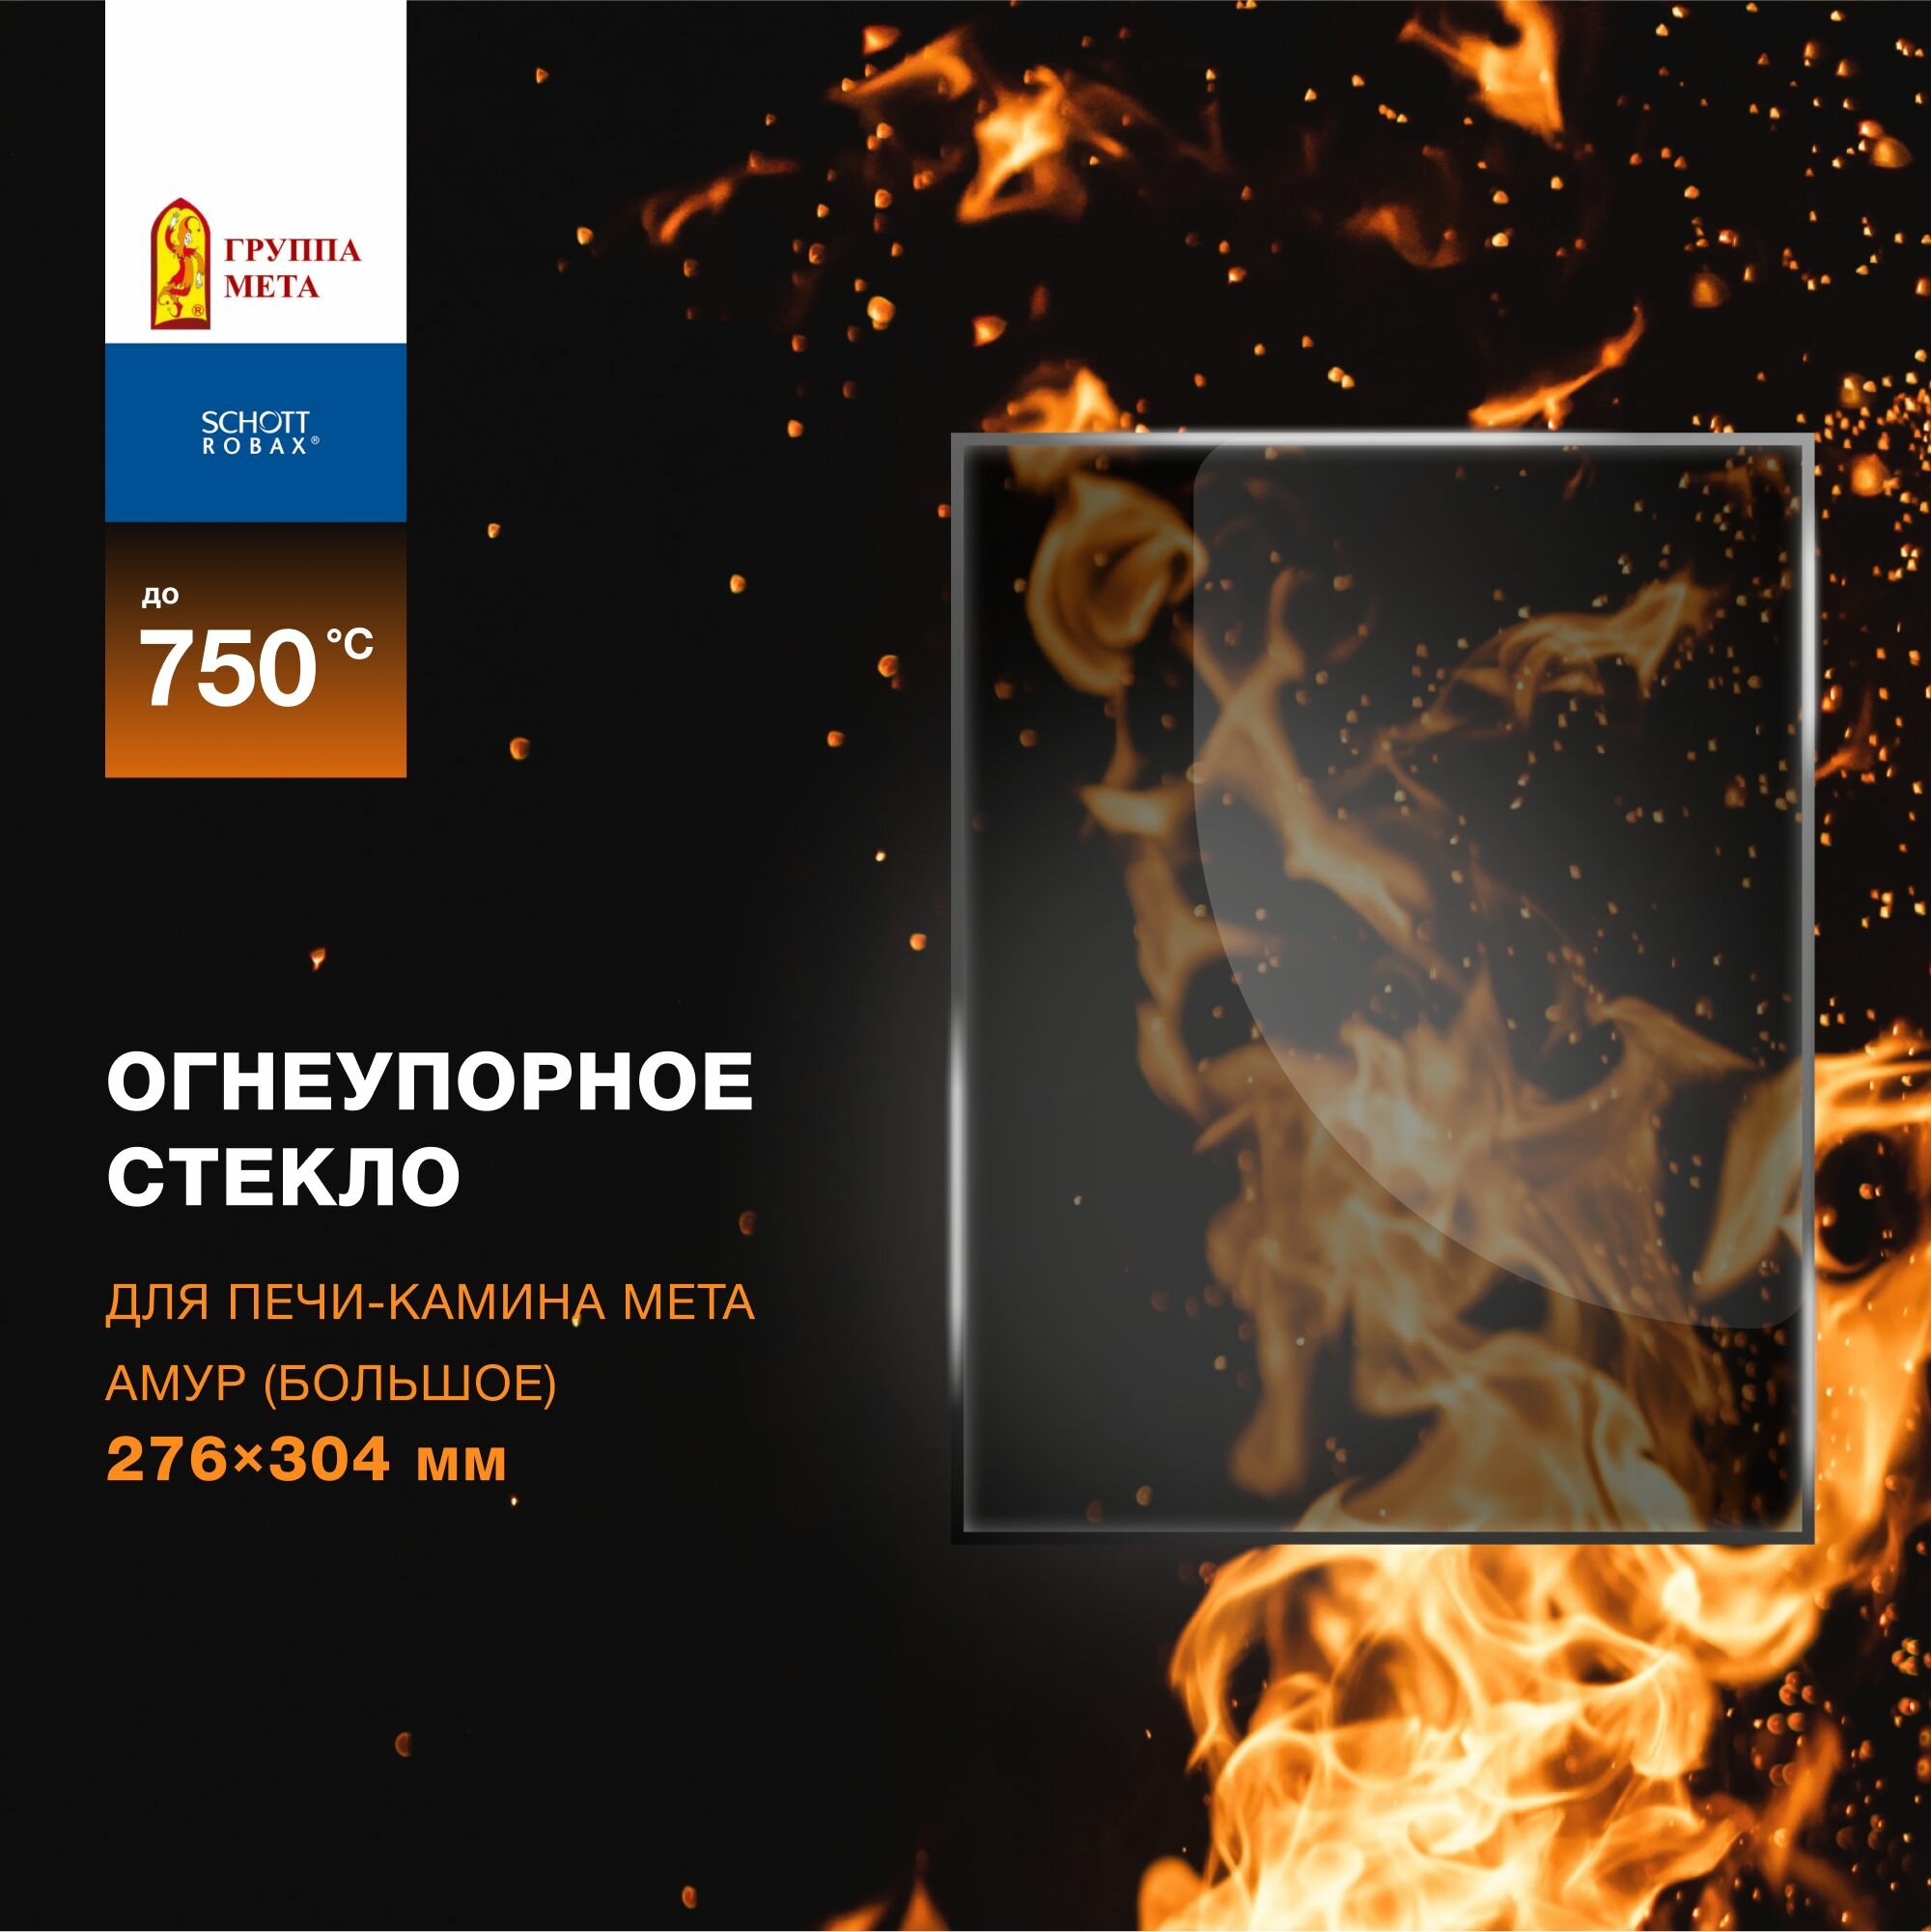 Огнеупорное жаропрочное стекло для печи-камина Мета Амур (большое), 276х304 мм